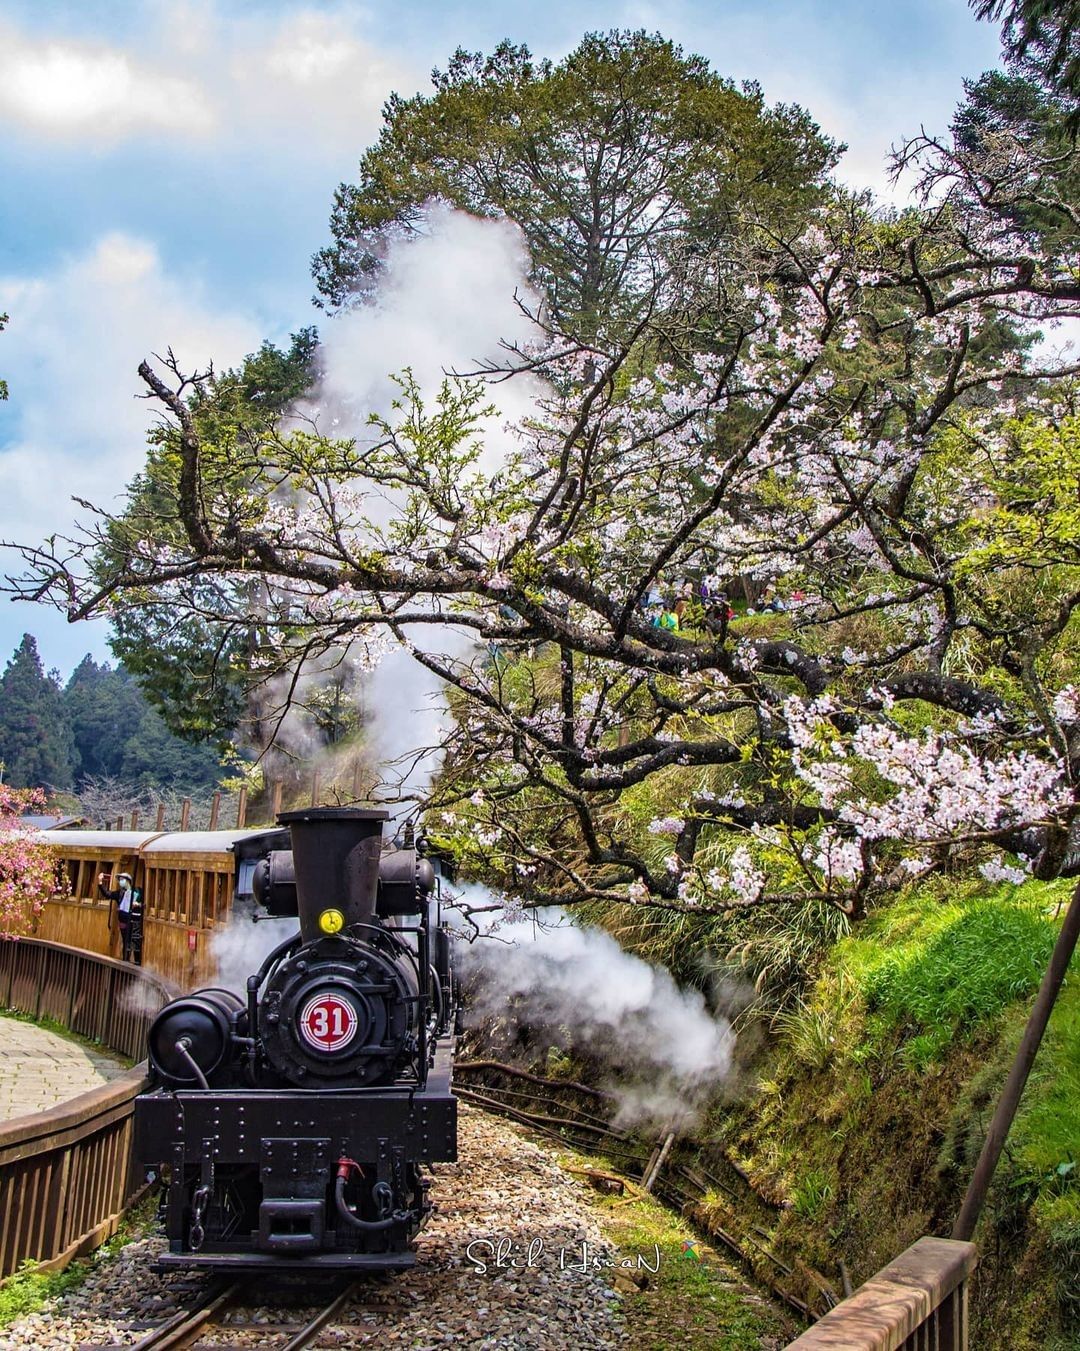 小編真的是很喜歡這種蒸汽火車來阿里山就是要搭這種小火車邊看山林、邊享受古色古香的韻味-⠀⠀⠀⠀⠀⠀⠀⠀⠀⠀⠀感謝 @shih_hs...